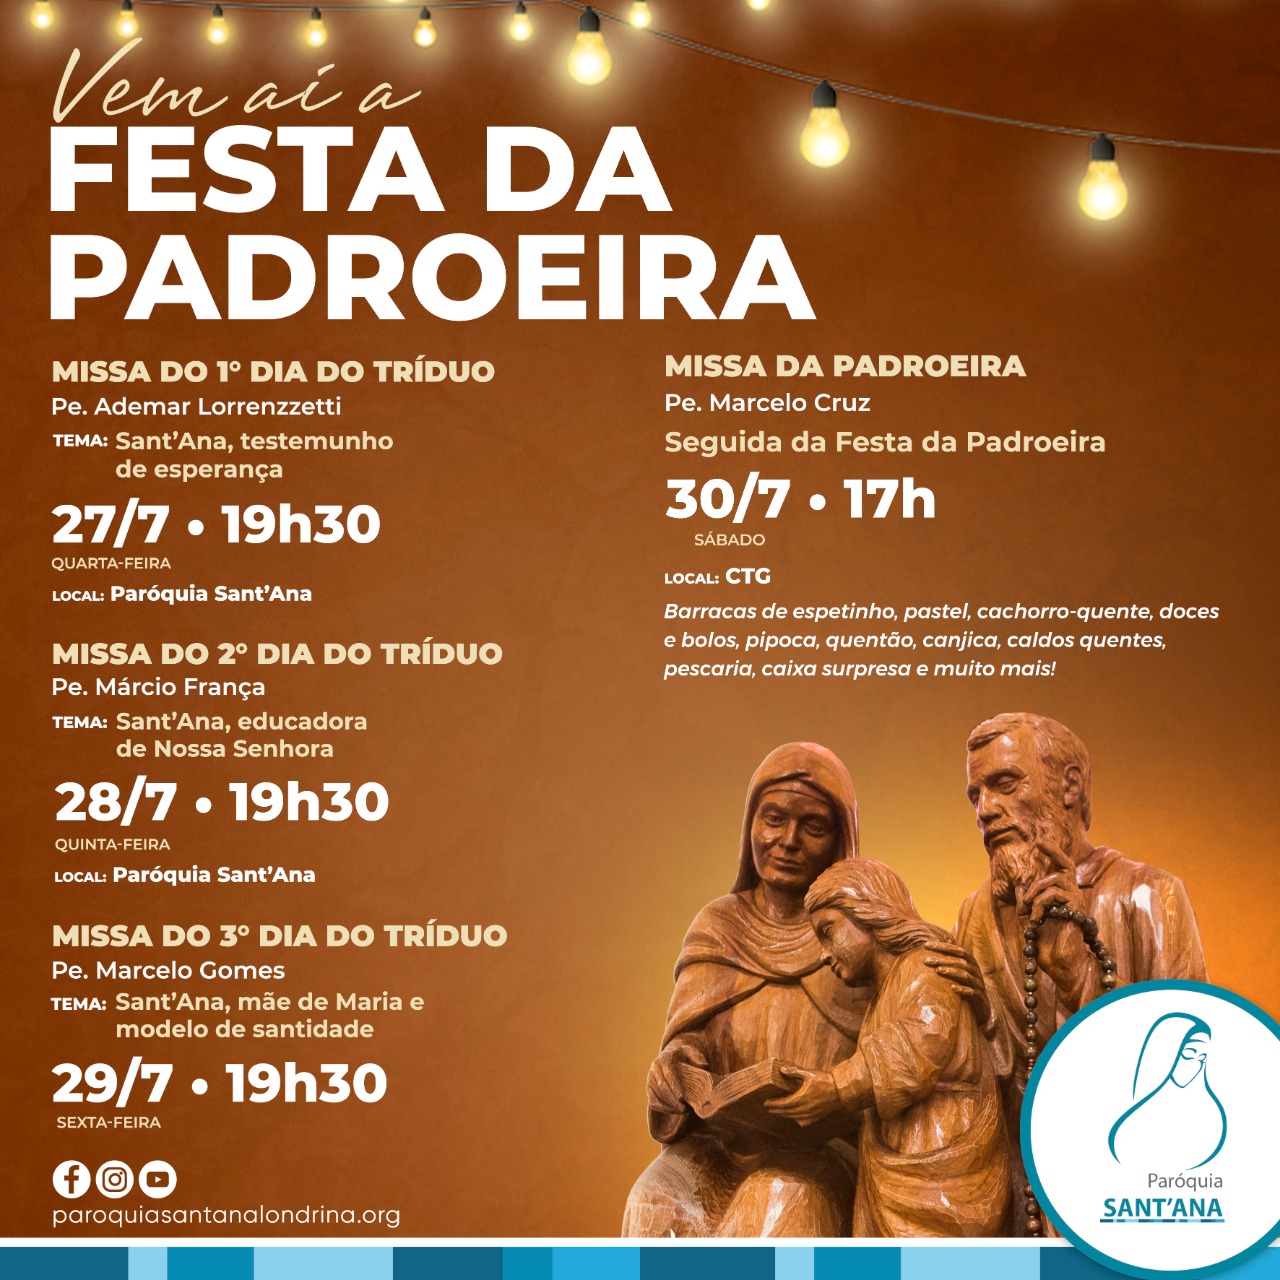 Vem aí... a FESTA DA PADROEIRA 2022!